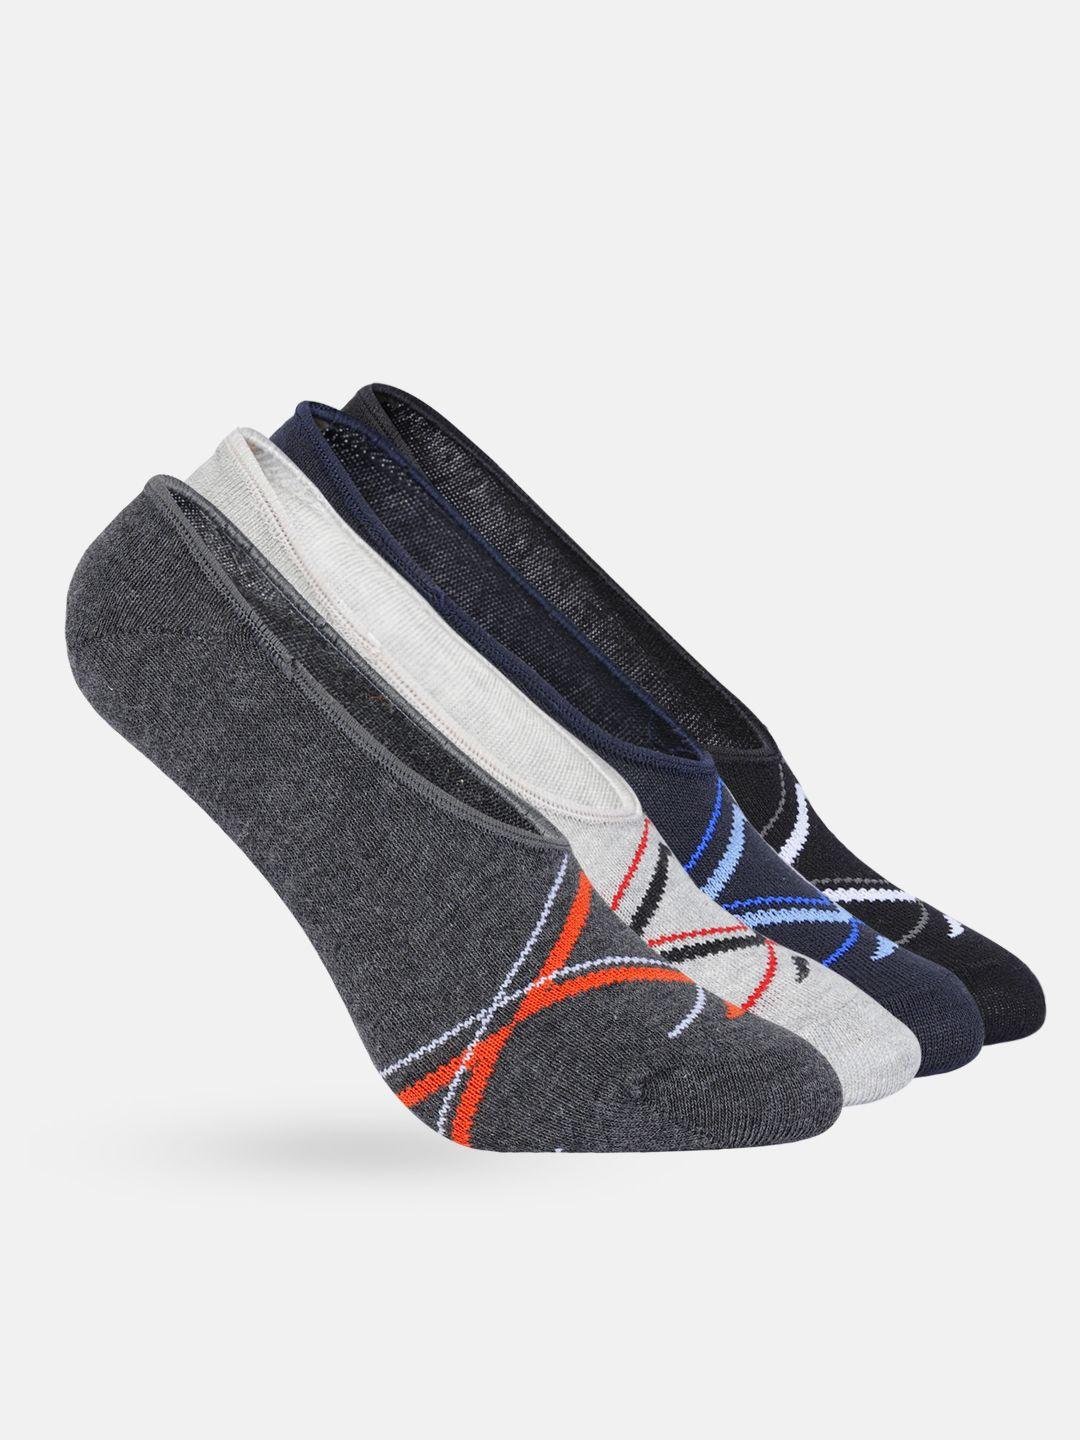 mast & harbour men set of 4 woven design patterned shoe liner socks